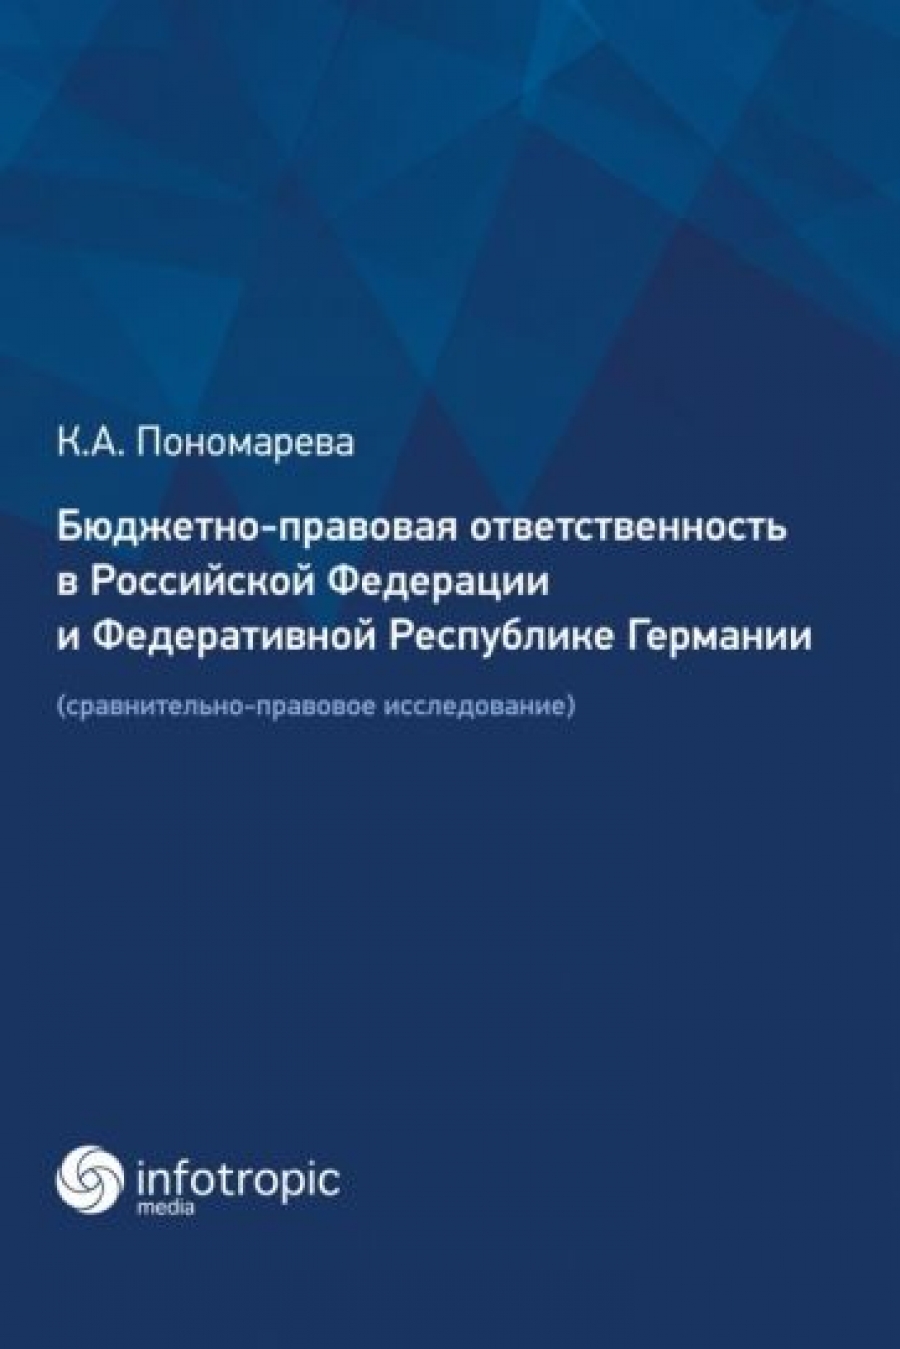 Пономарева К.А. Бюджетно-правовая ответственность в Российской Федерации и Федеративной Республике Германии 